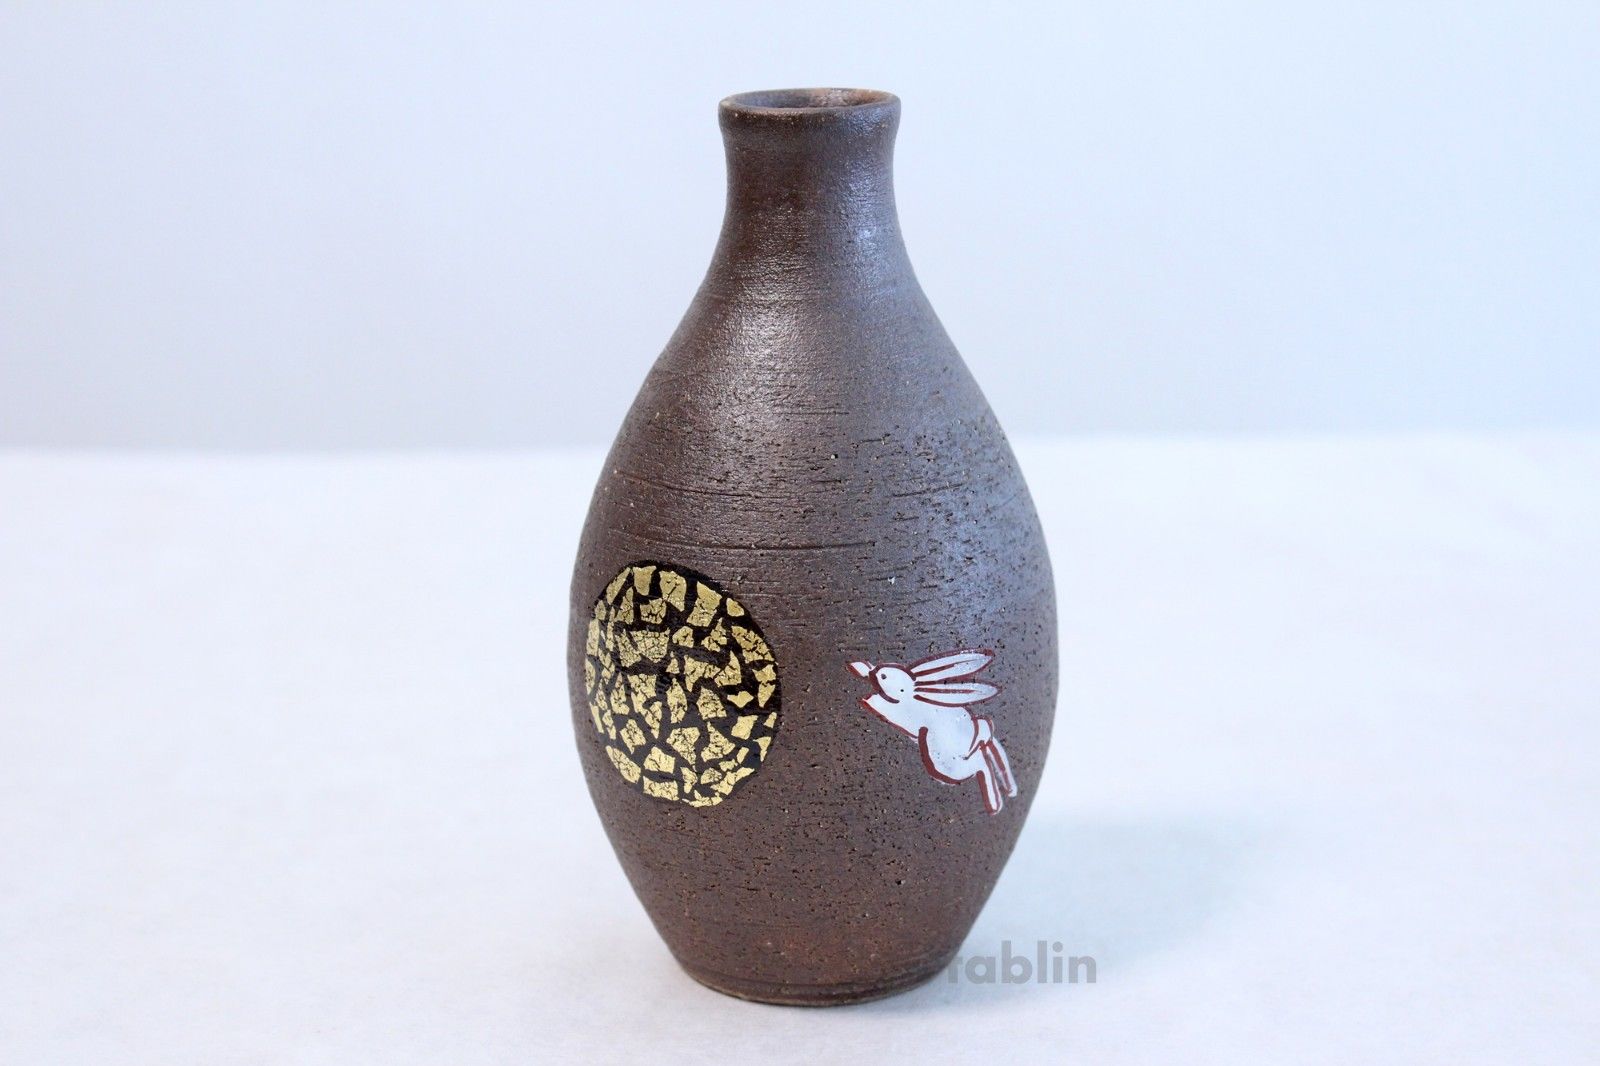 Ceramic Sake Serving Cups and Bottle Set Retro Japanese Style Sake